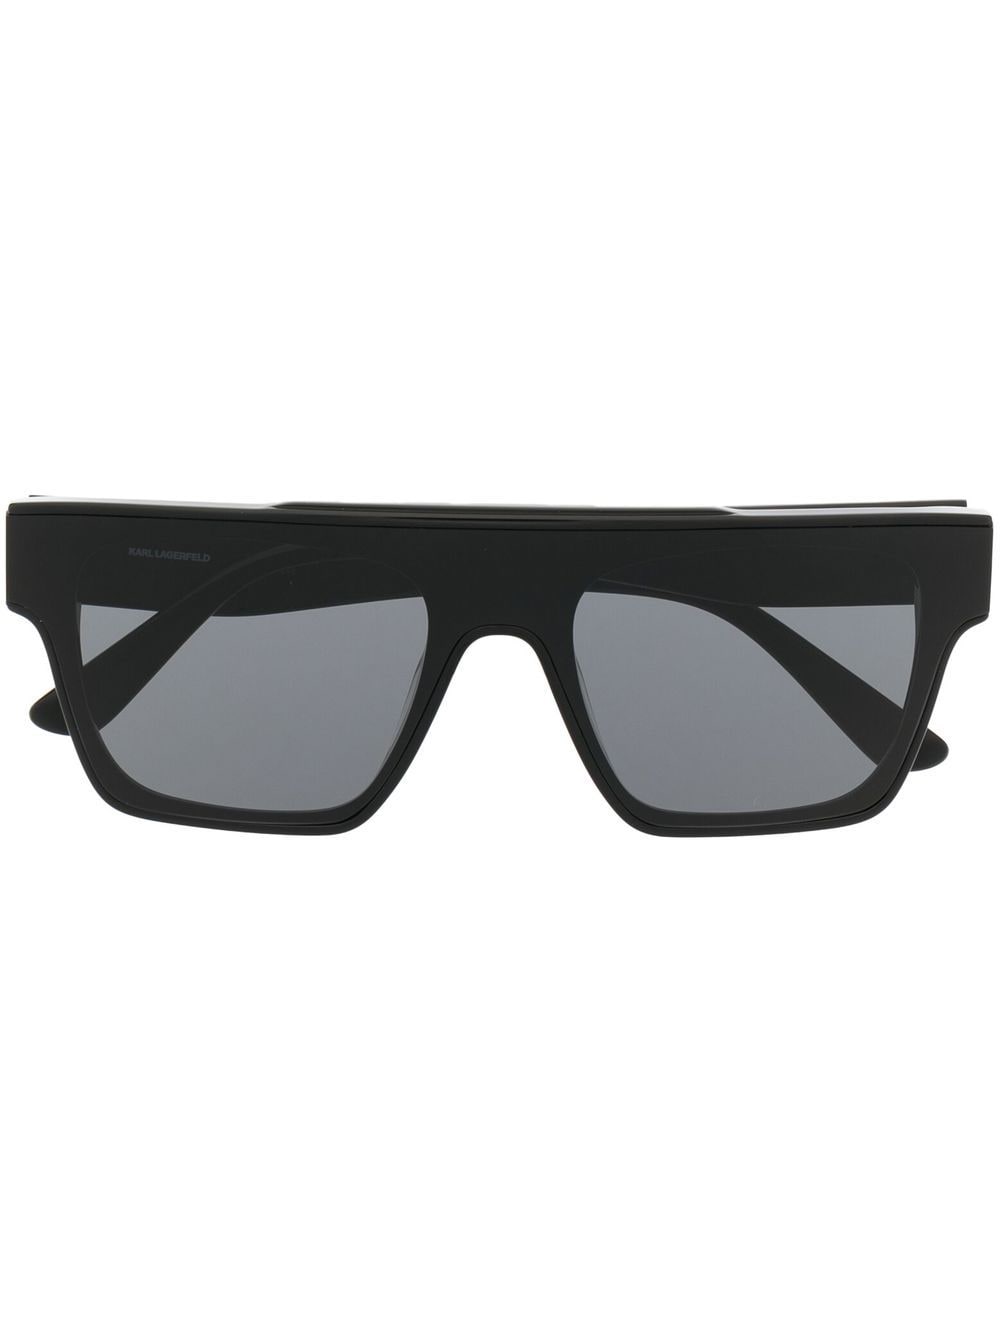 karl lagerfeld lunettes de soleil carrées à logo imprimé - noir